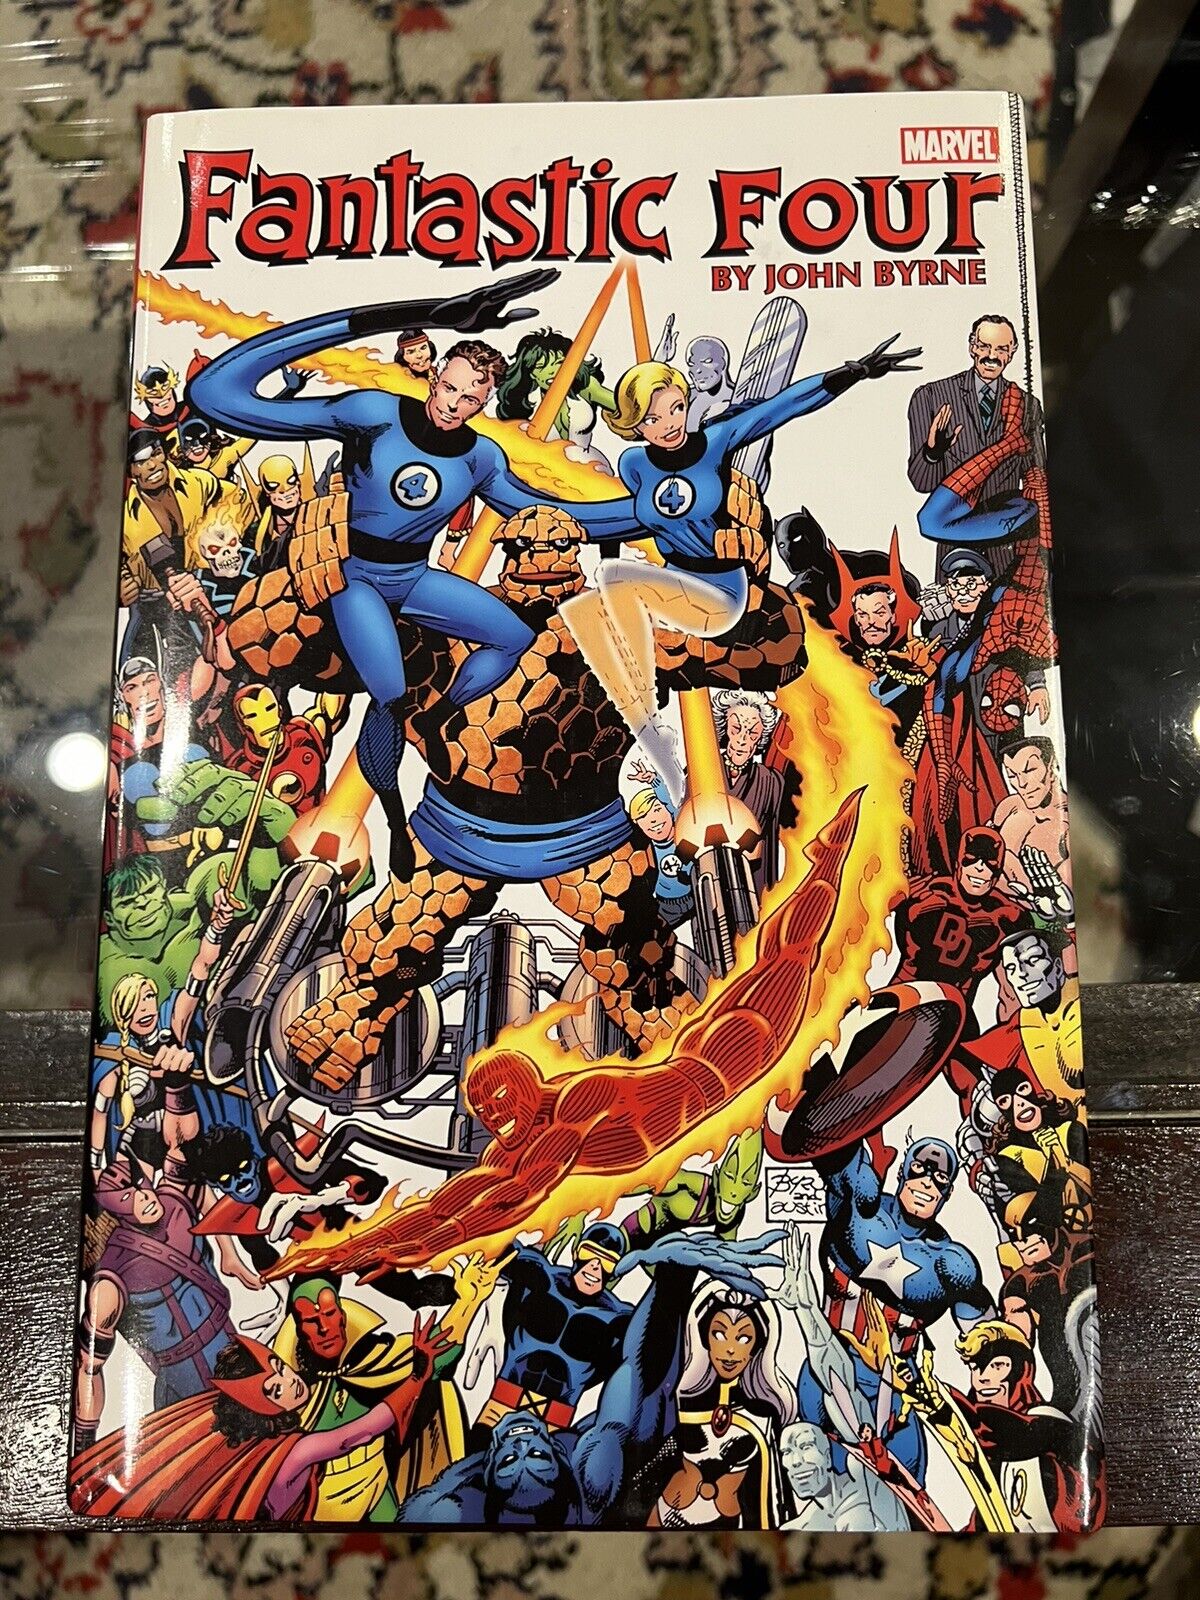 Fantastic Four Omnibus LOT Vol. 1 & 2 (vol. 2 FACTORY SEALED) John Byrne